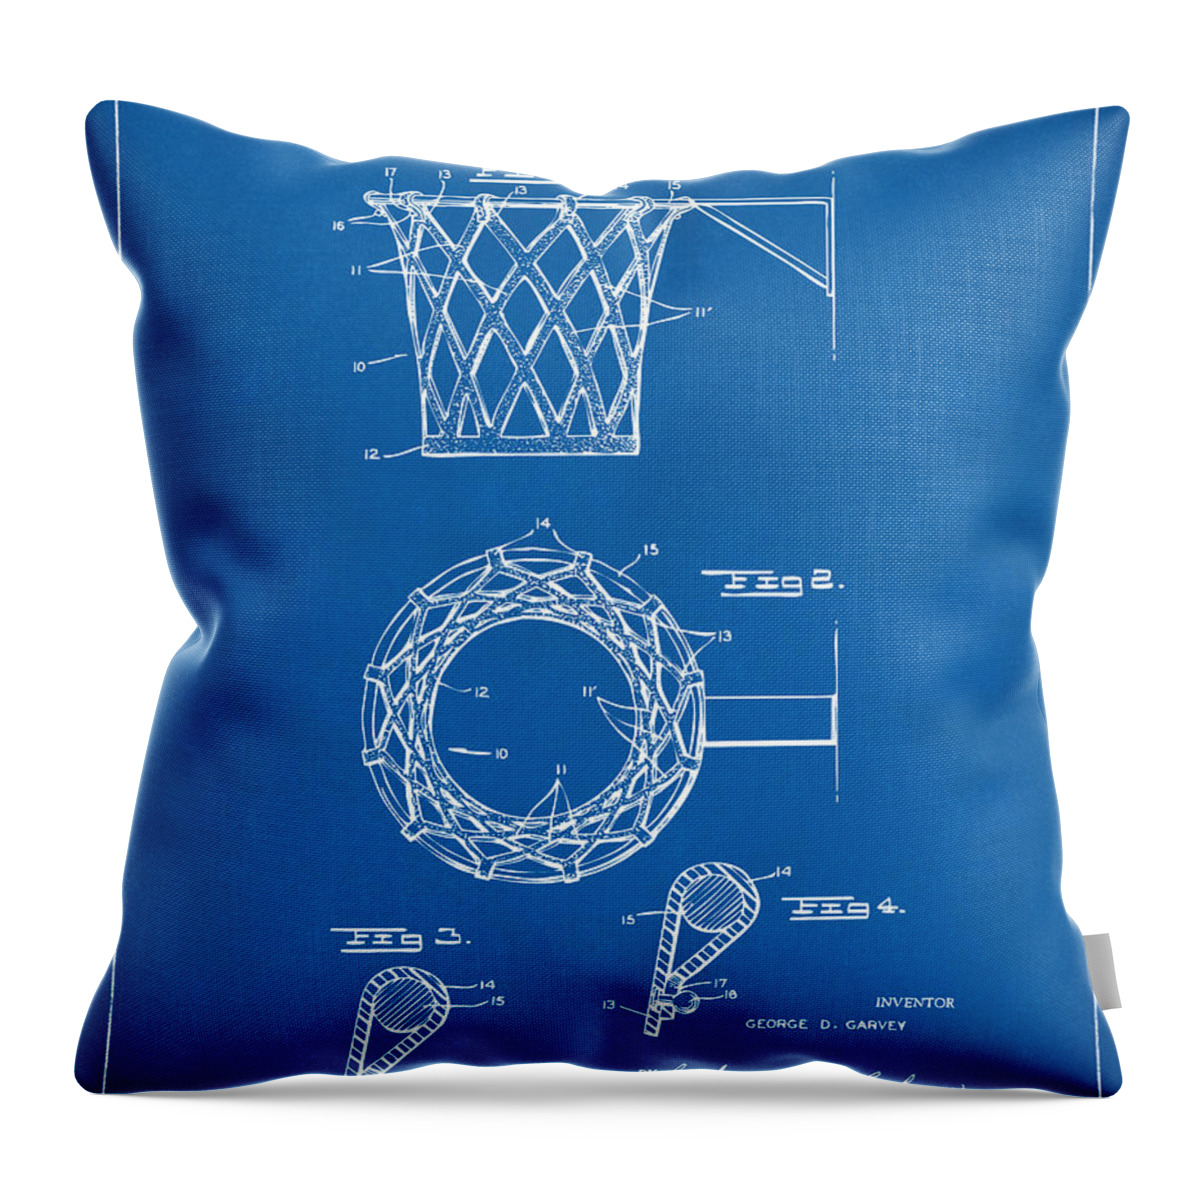 Basketball Throw Pillow featuring the digital art 1951 Basketball Net Patent Artwork - Blueprint by Nikki Marie Smith